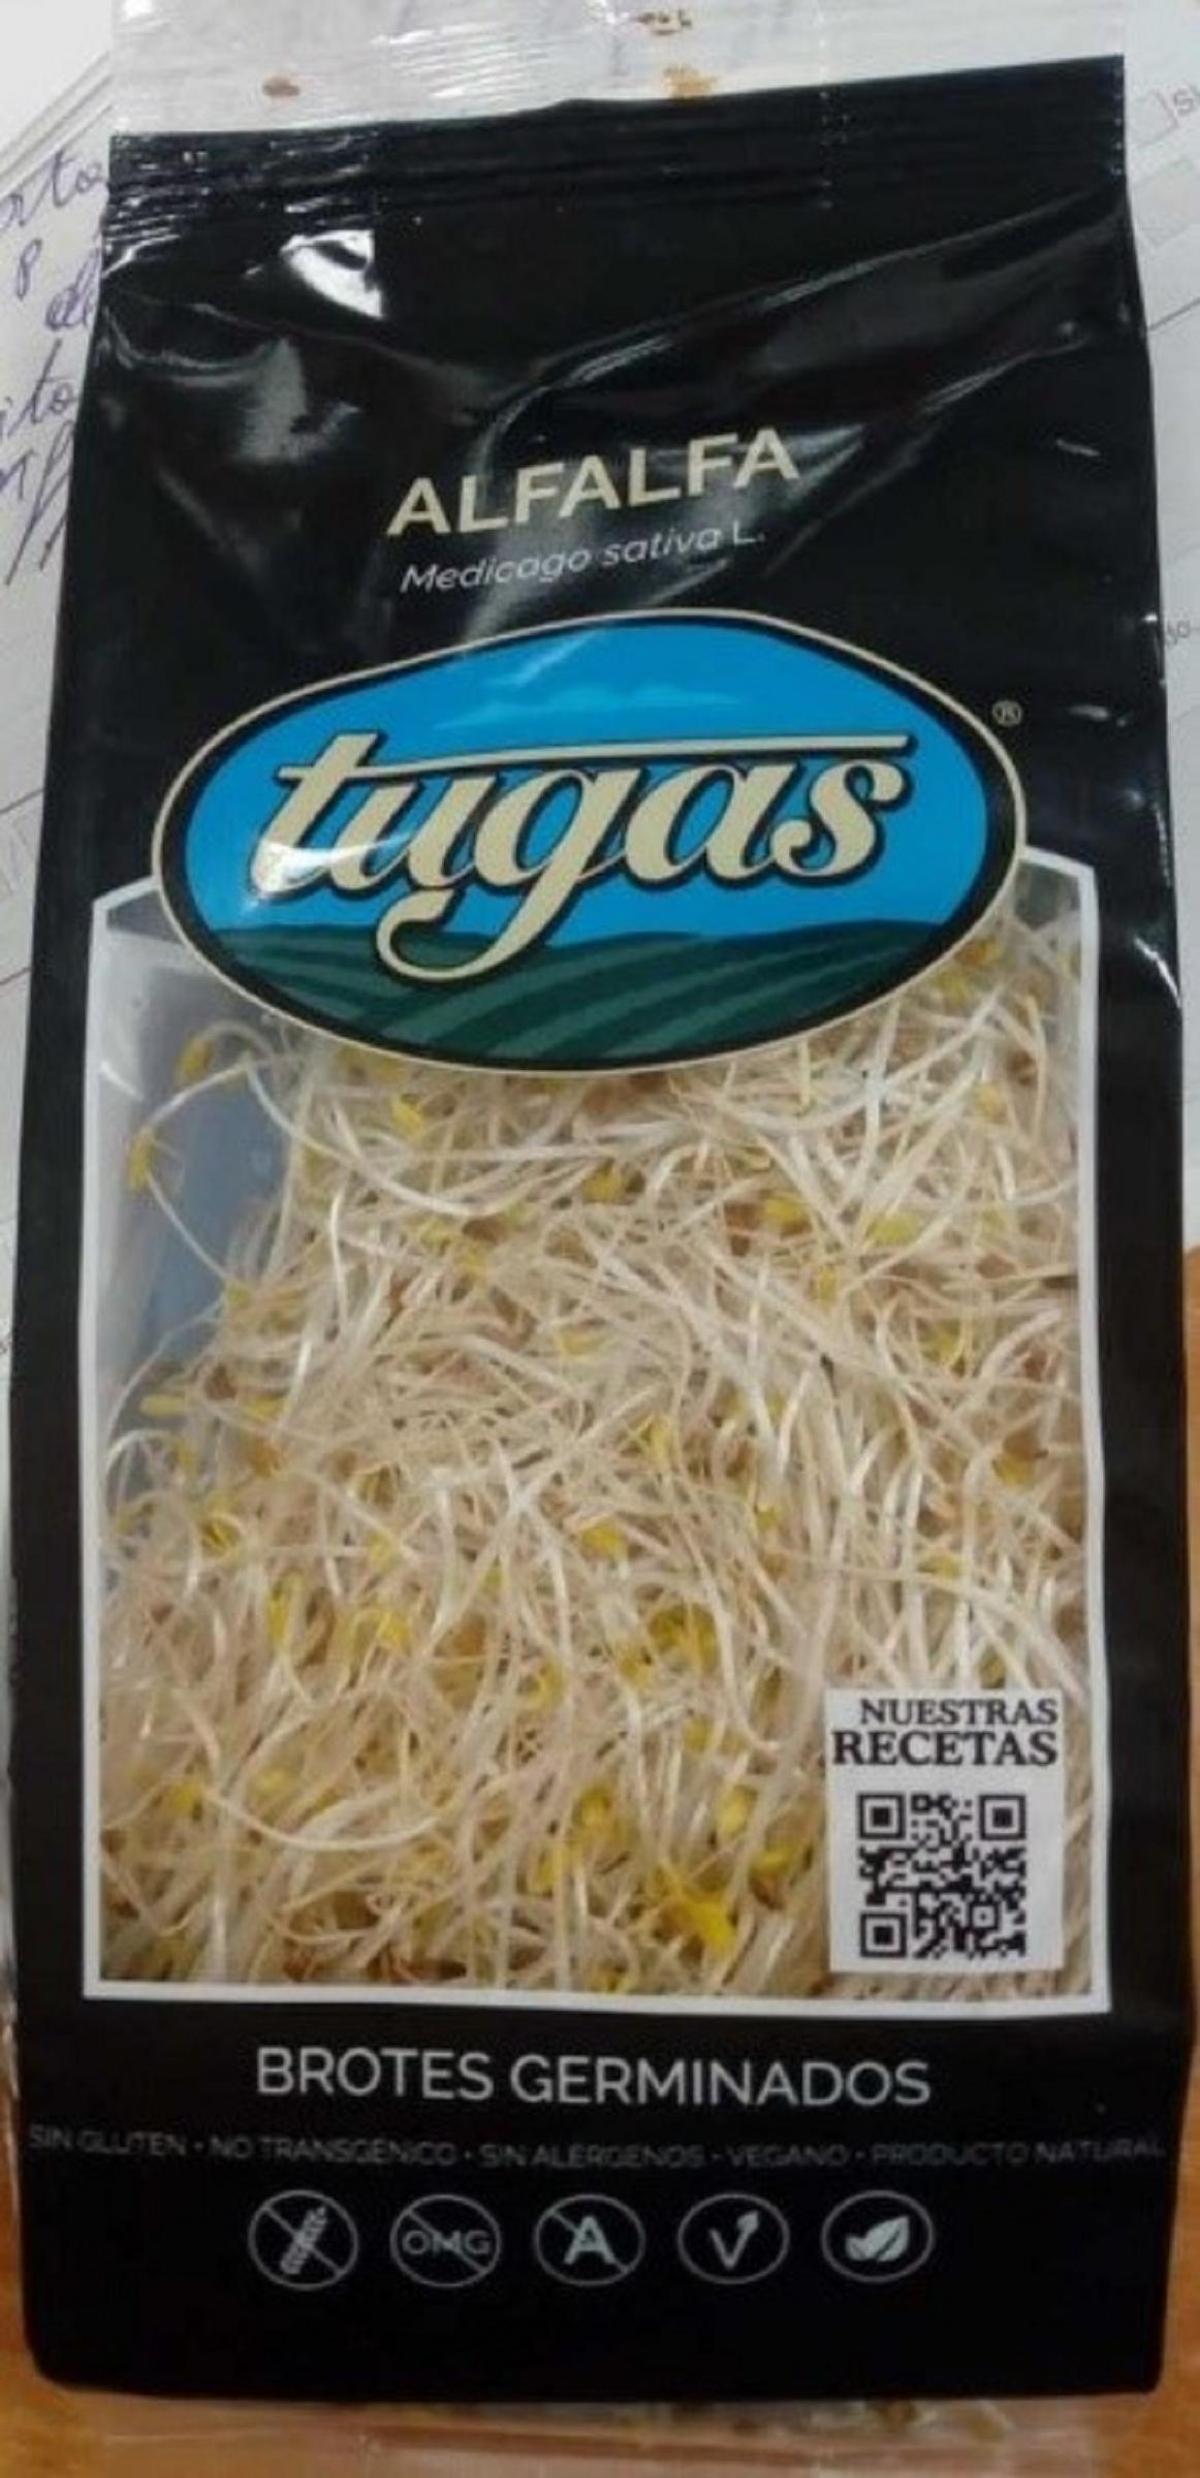 Brotes germinados de alfalfa de la marca Tugas.